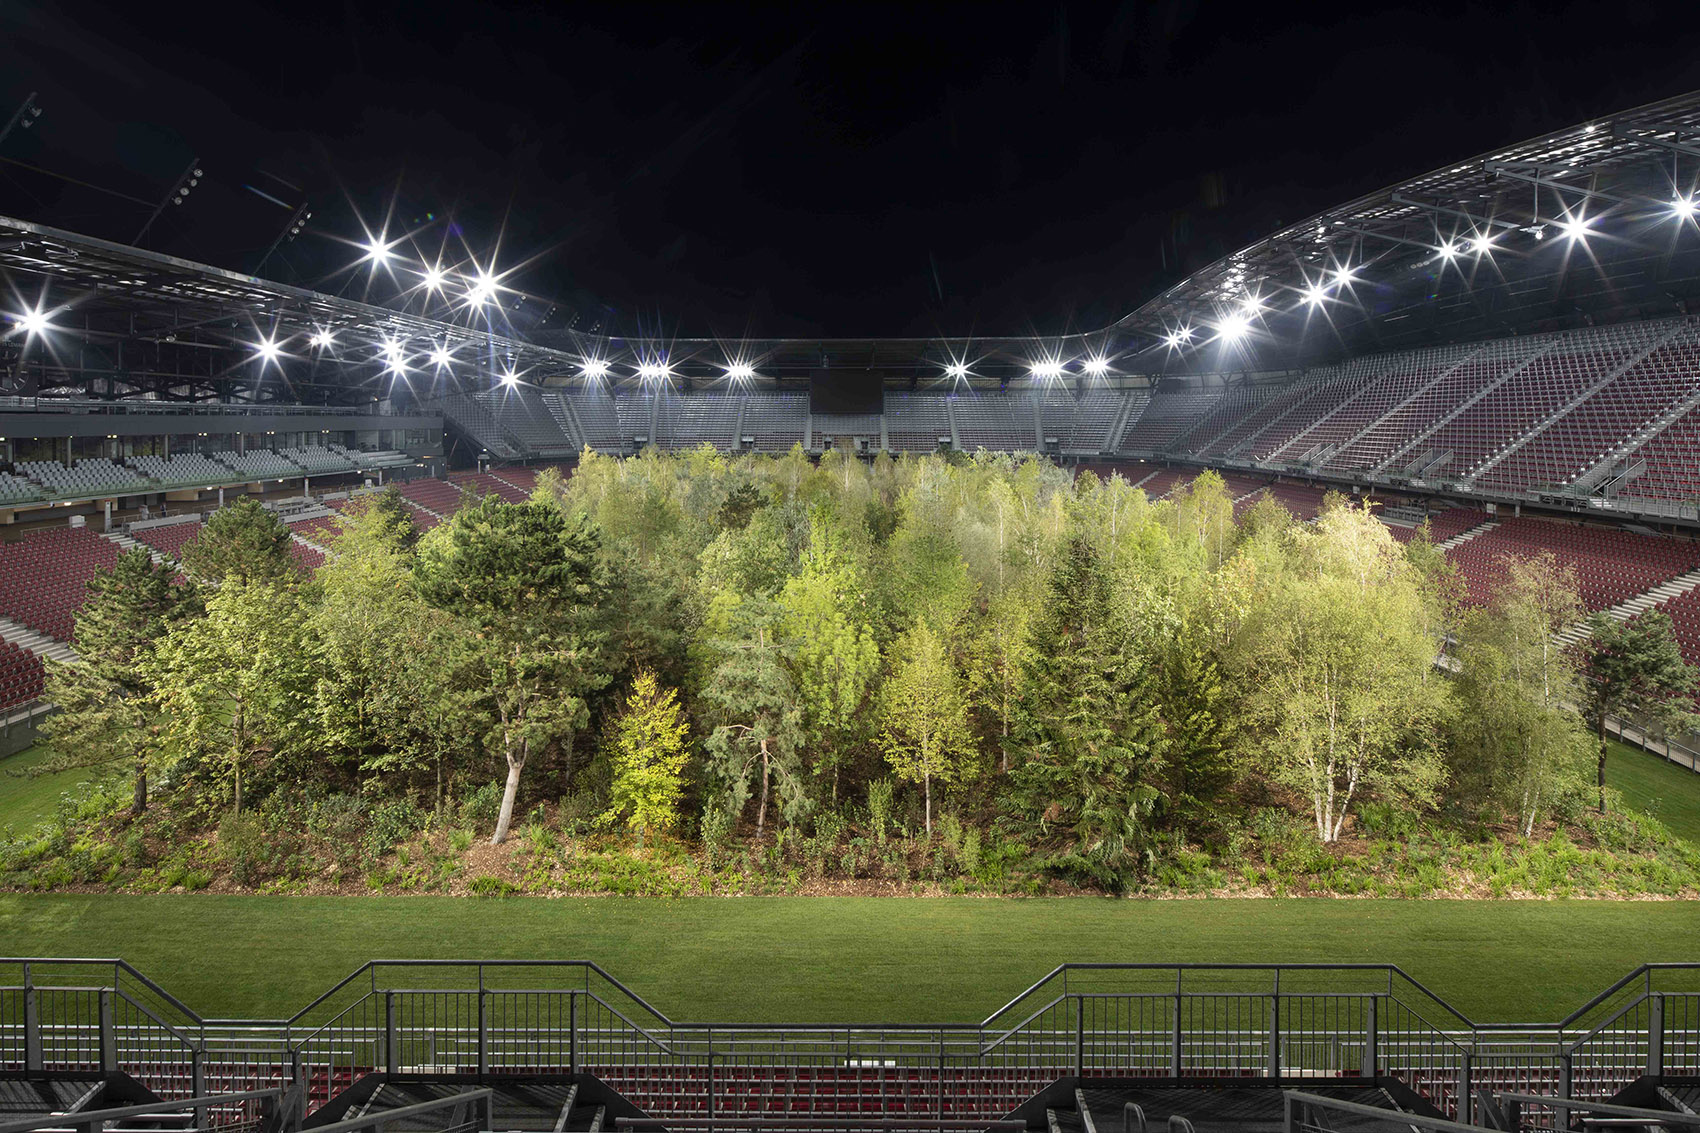 “致森林——自然不倦的魅力”展览，奥地利/足球场变身欧洲中部森林-37